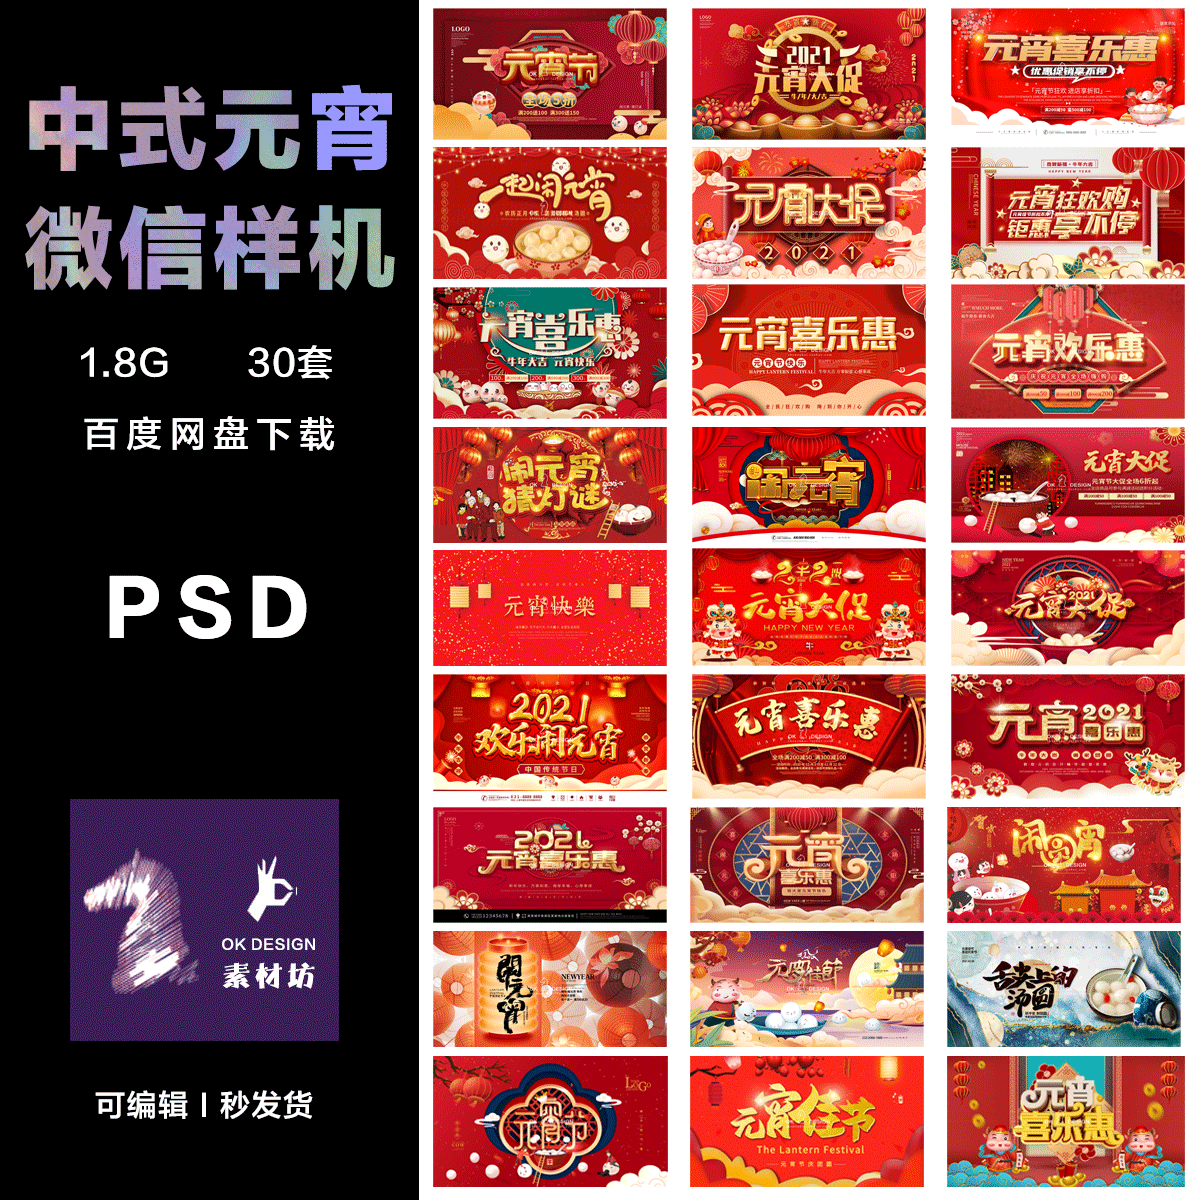 PHOTOSHOP 中国国潮虎年元宵佳节微信头图 PSD高端设计元素素材